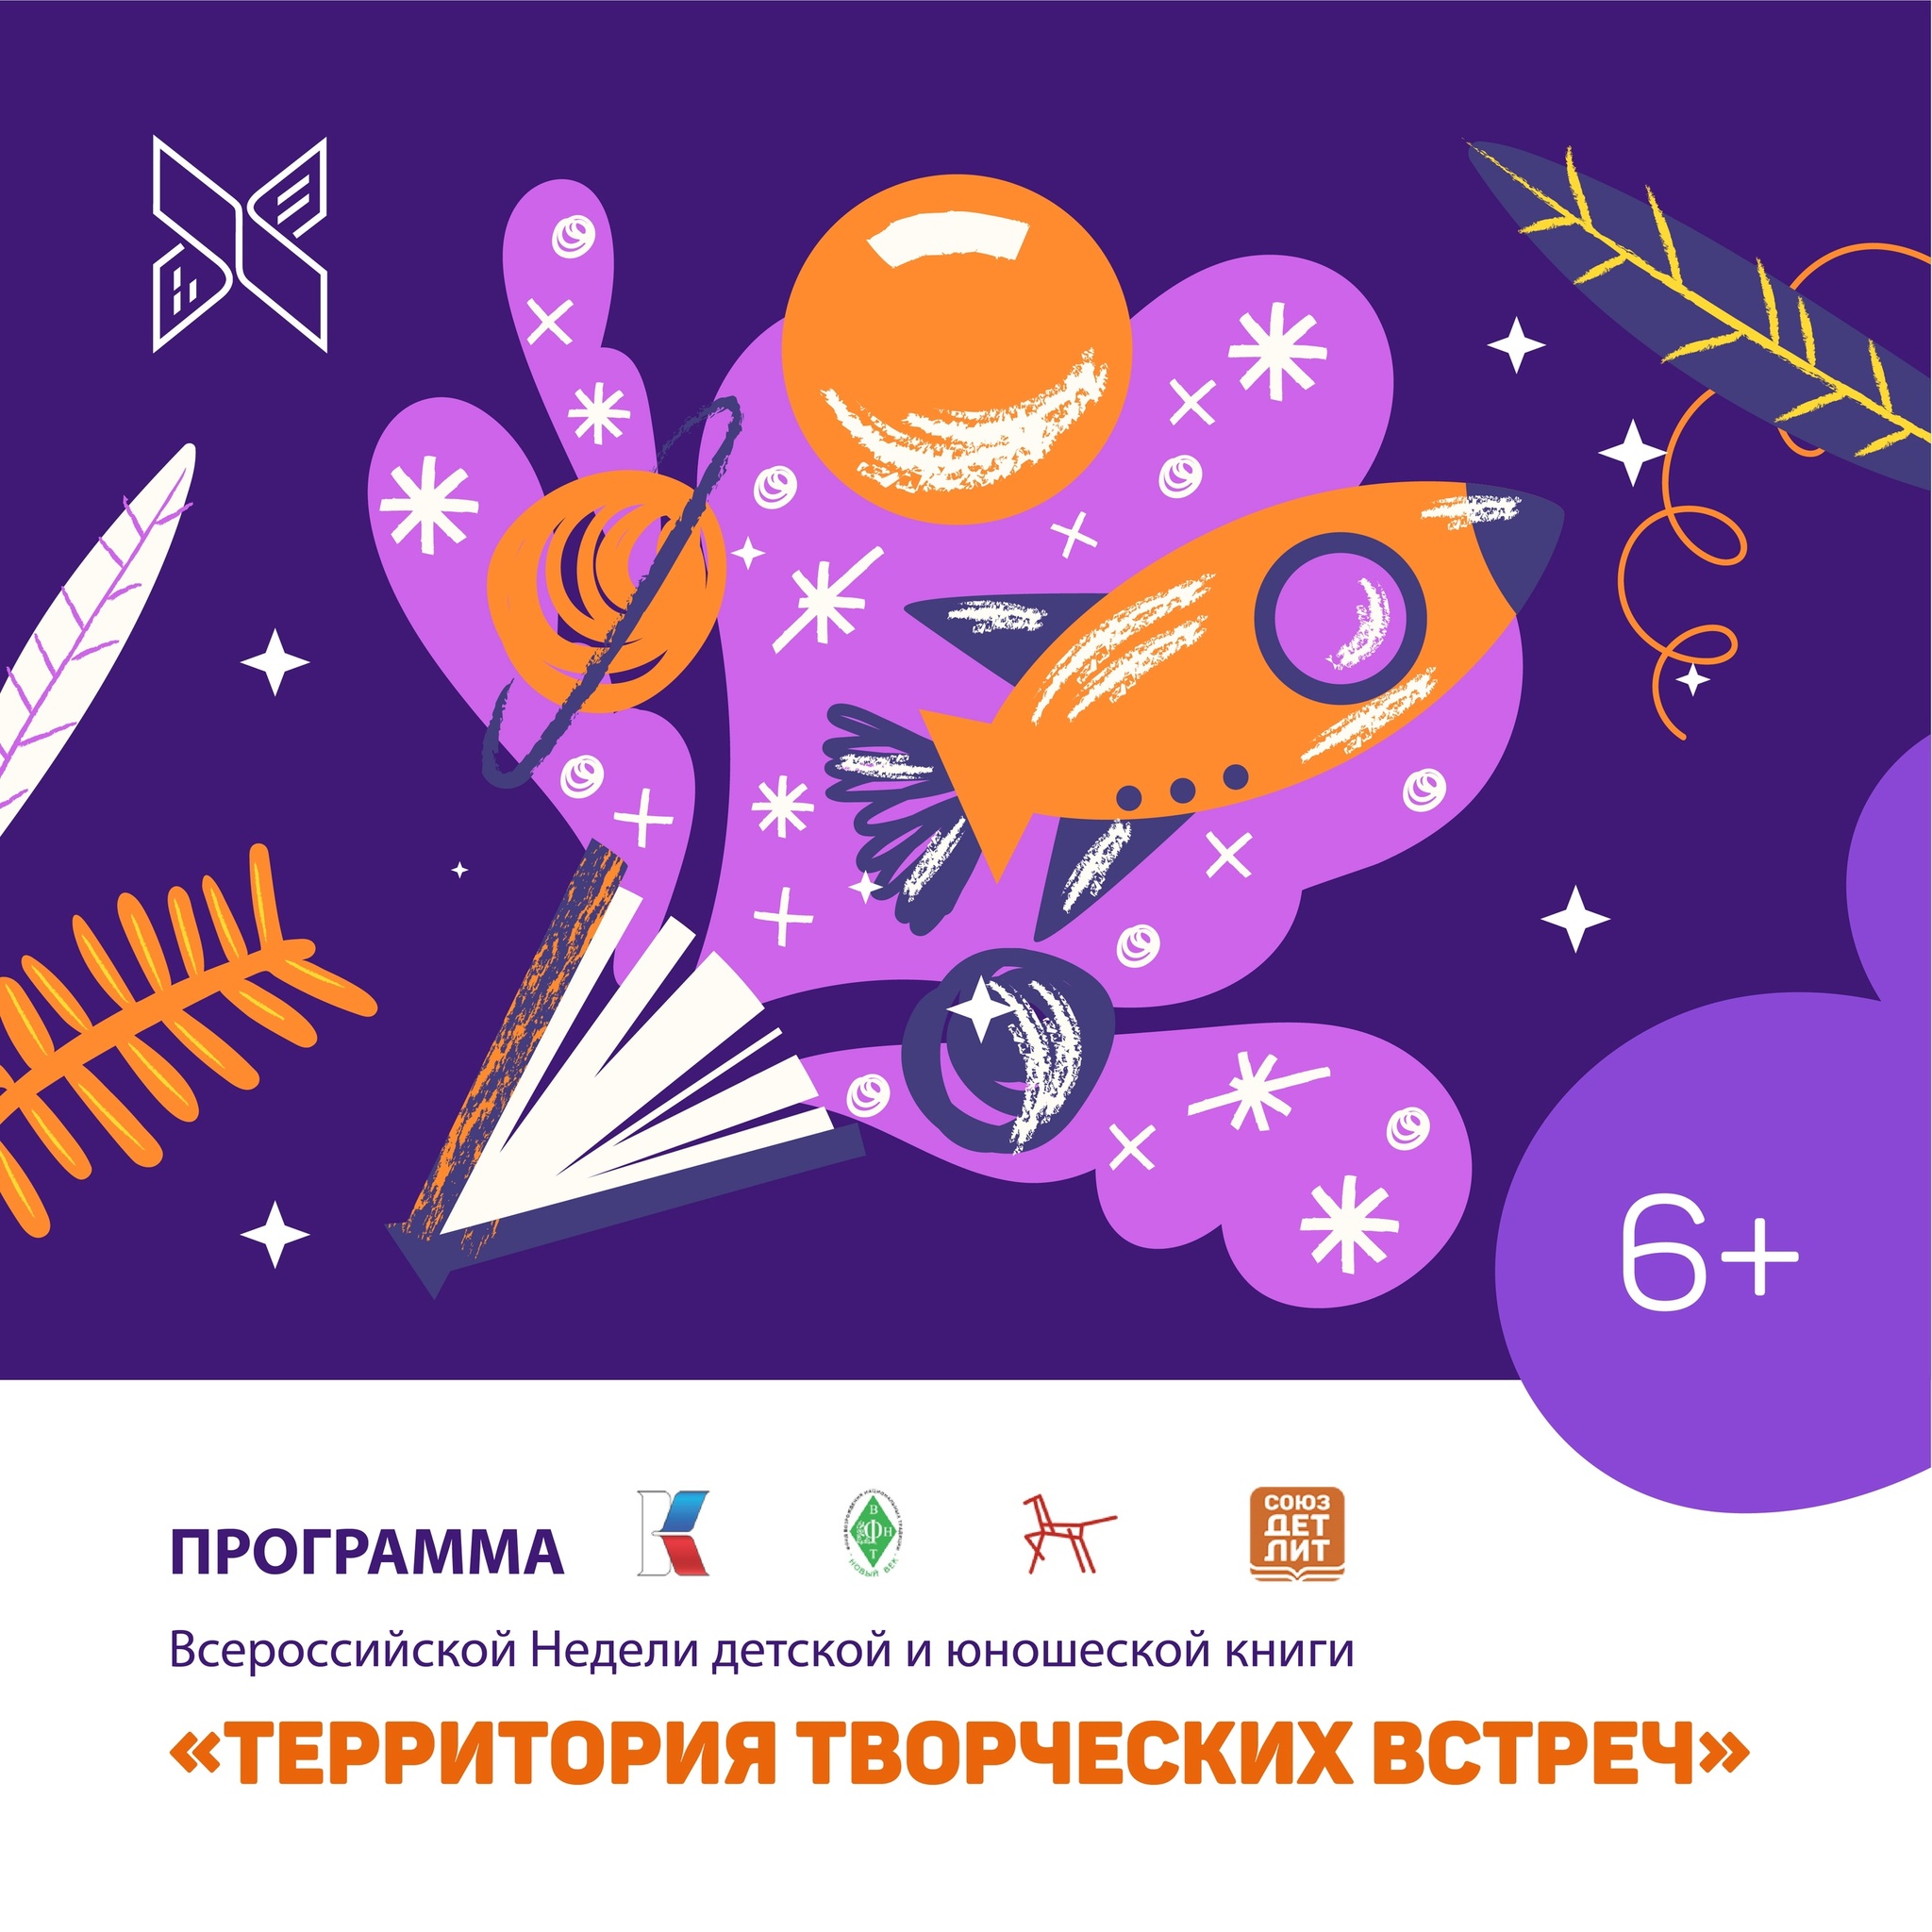 Всероссийская Неделя детской и юношеской книги пройдет в Государственной библиотеке Югры!